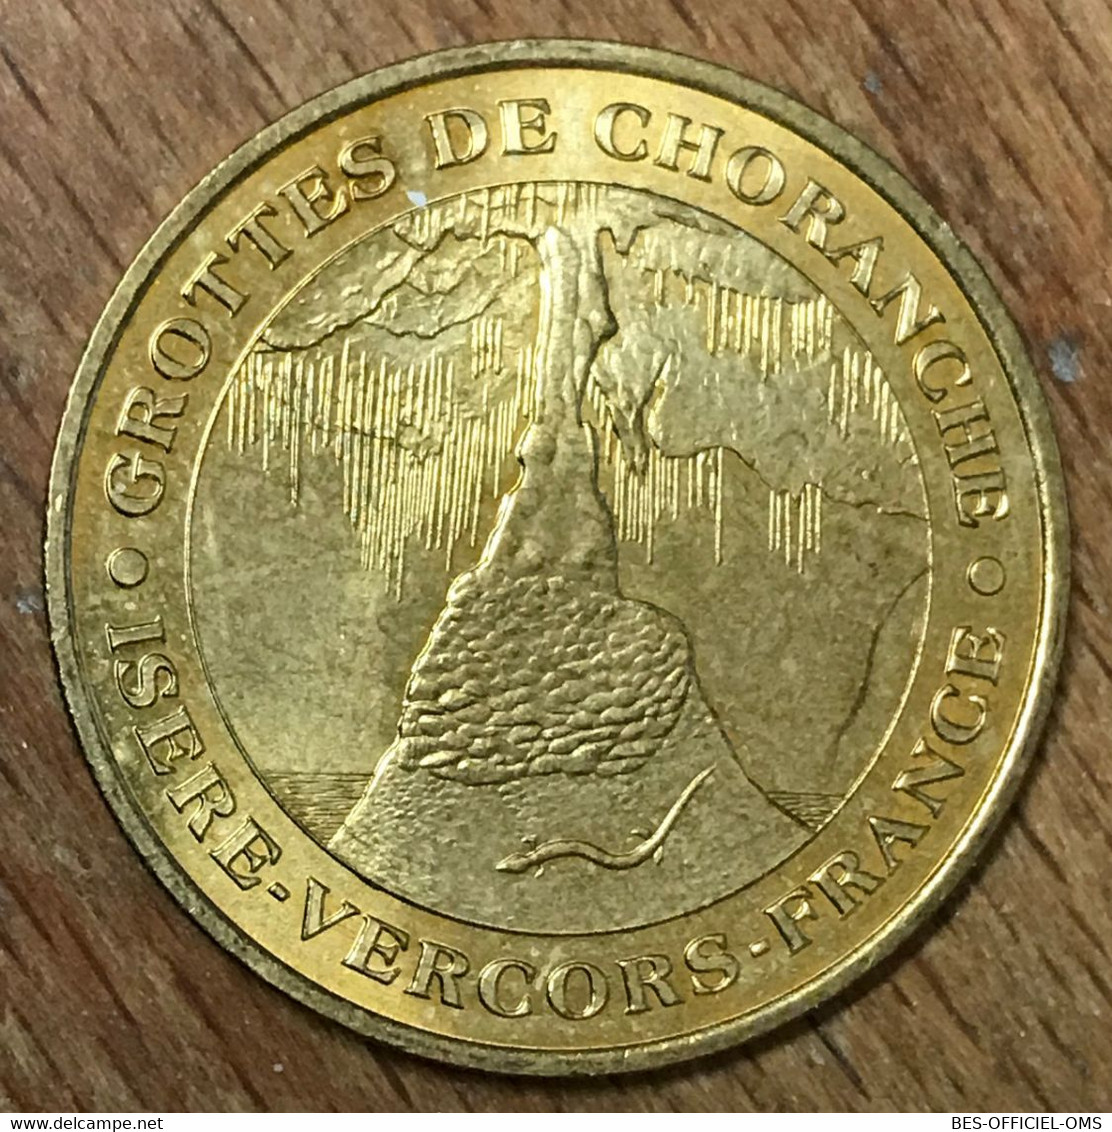 38 GROTTE DE CHORANCHE MDP 2001 MEDAILLE SOUVENIR MONNAIE DE PARIS JETON TOURISTIQUE MEDALS COINS TOKENS - 2001